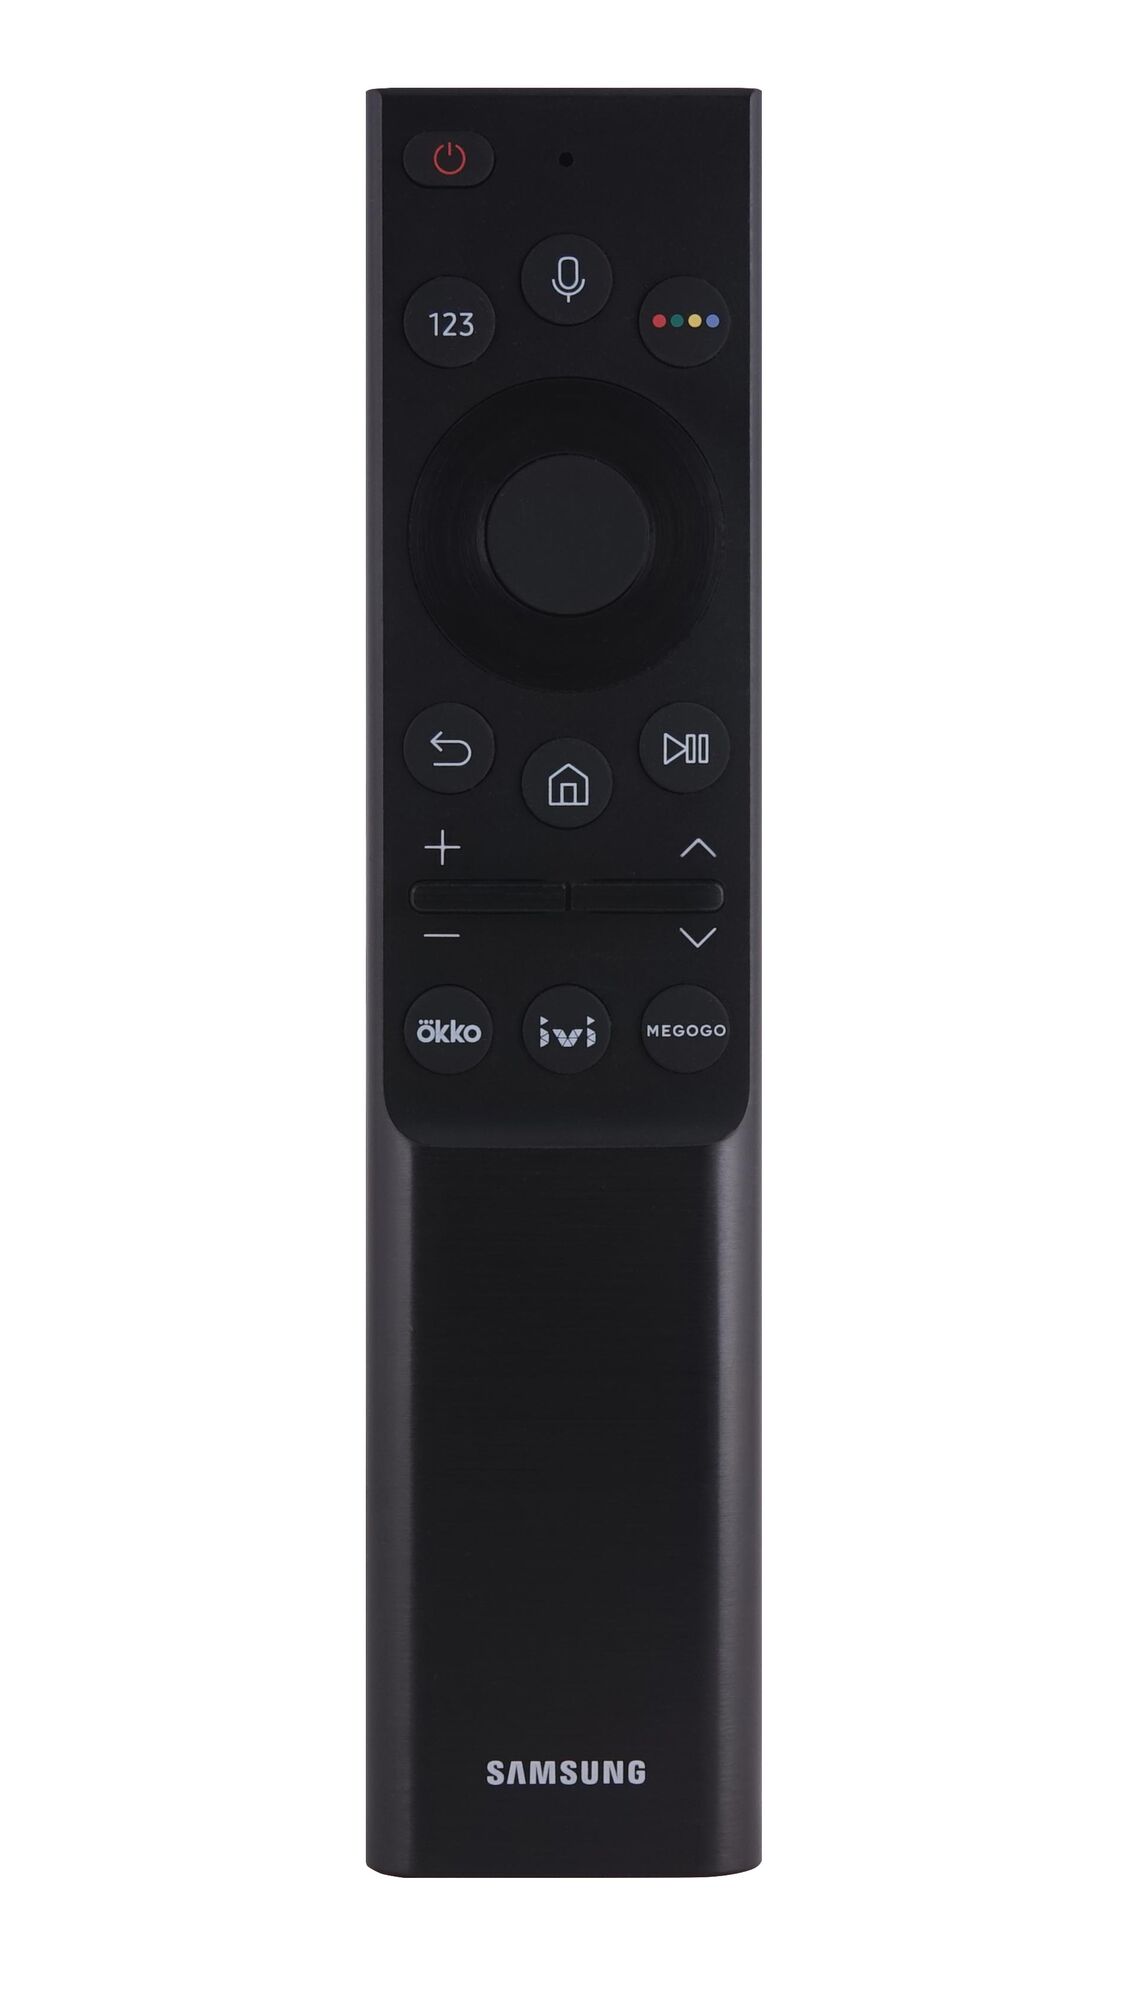 Пульт ДУ Samsung BN59-01363G Smart Control Okko, IVI, Megogo Ultra HDTV Original